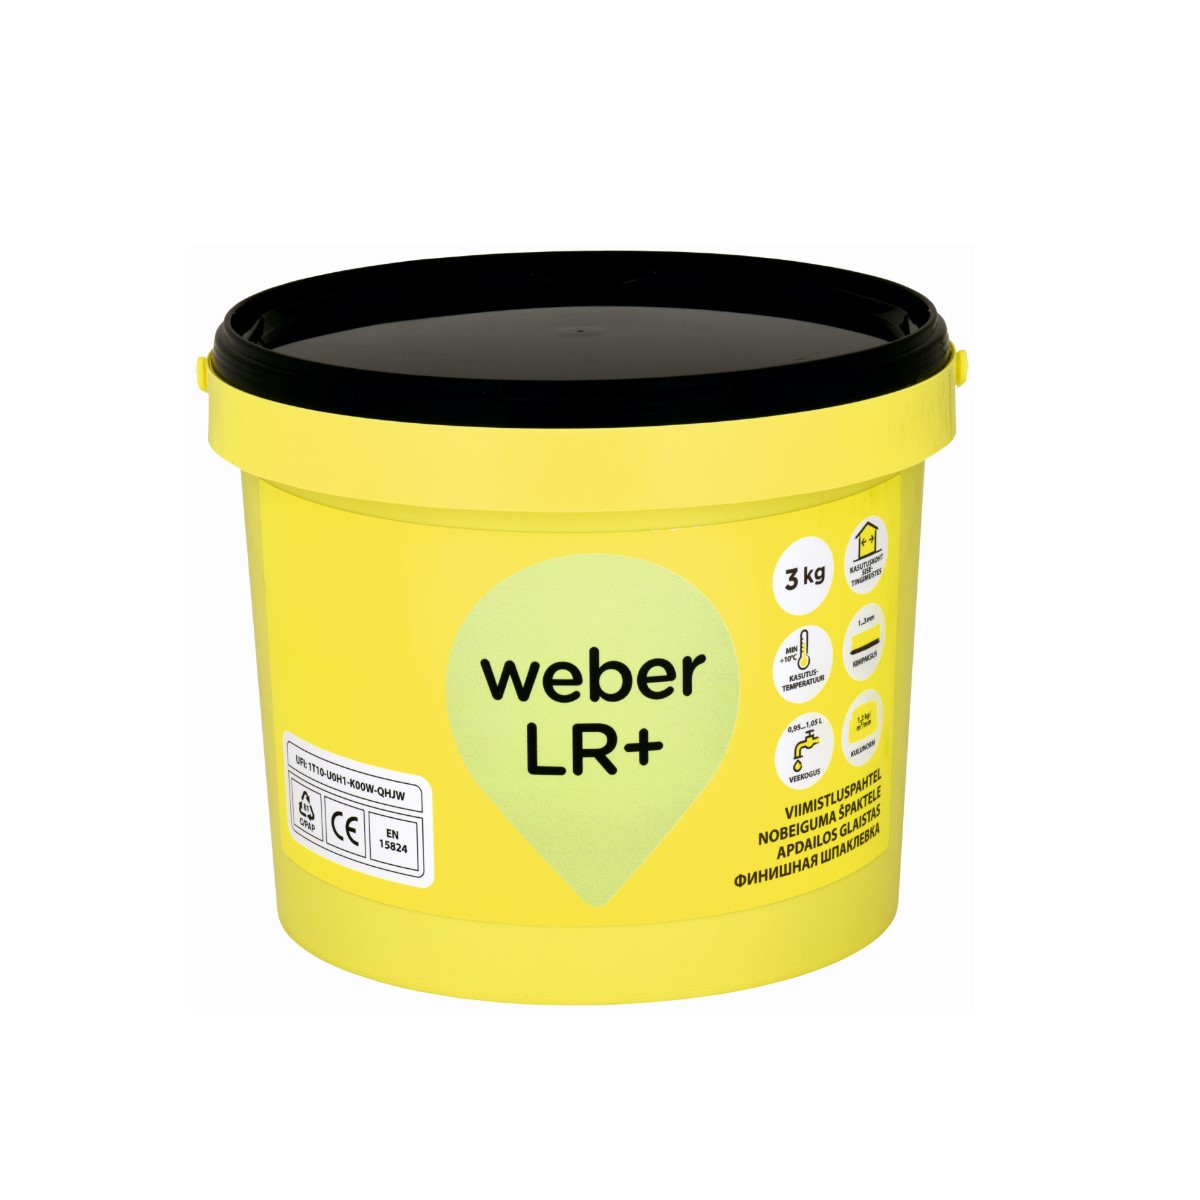 Weber LR+ smalka izlīdzinošā nobeiguma špaktele, 3kg